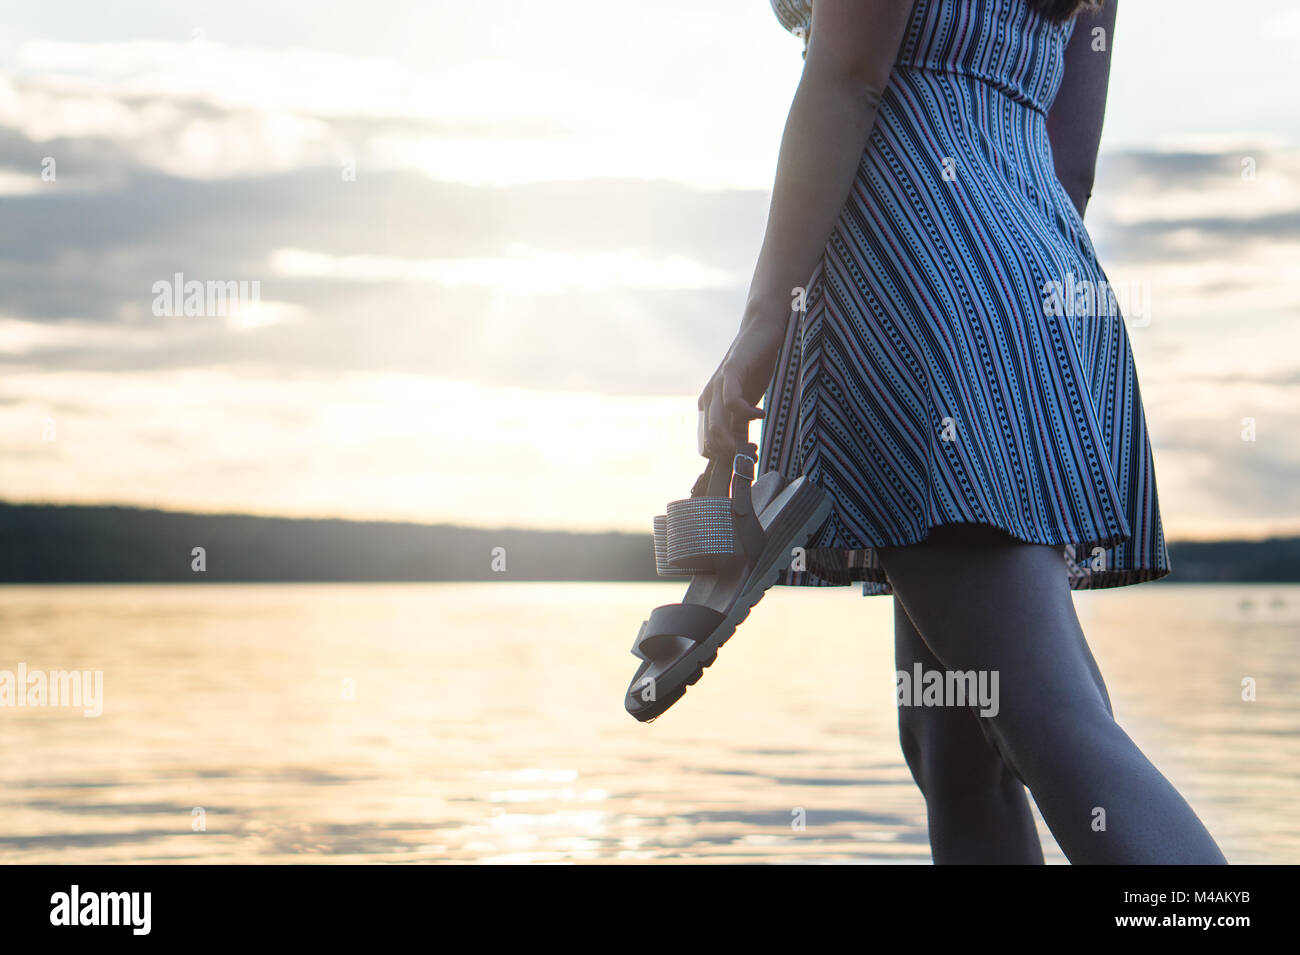 Mutige und selbstbewusste Frau in Kleid geniessen sie einen wunderschönen Sonnenuntergang am Strand. Freiheit und unbeschwerten Lebensstil. Die Schuhe in der Hand. Stockfoto